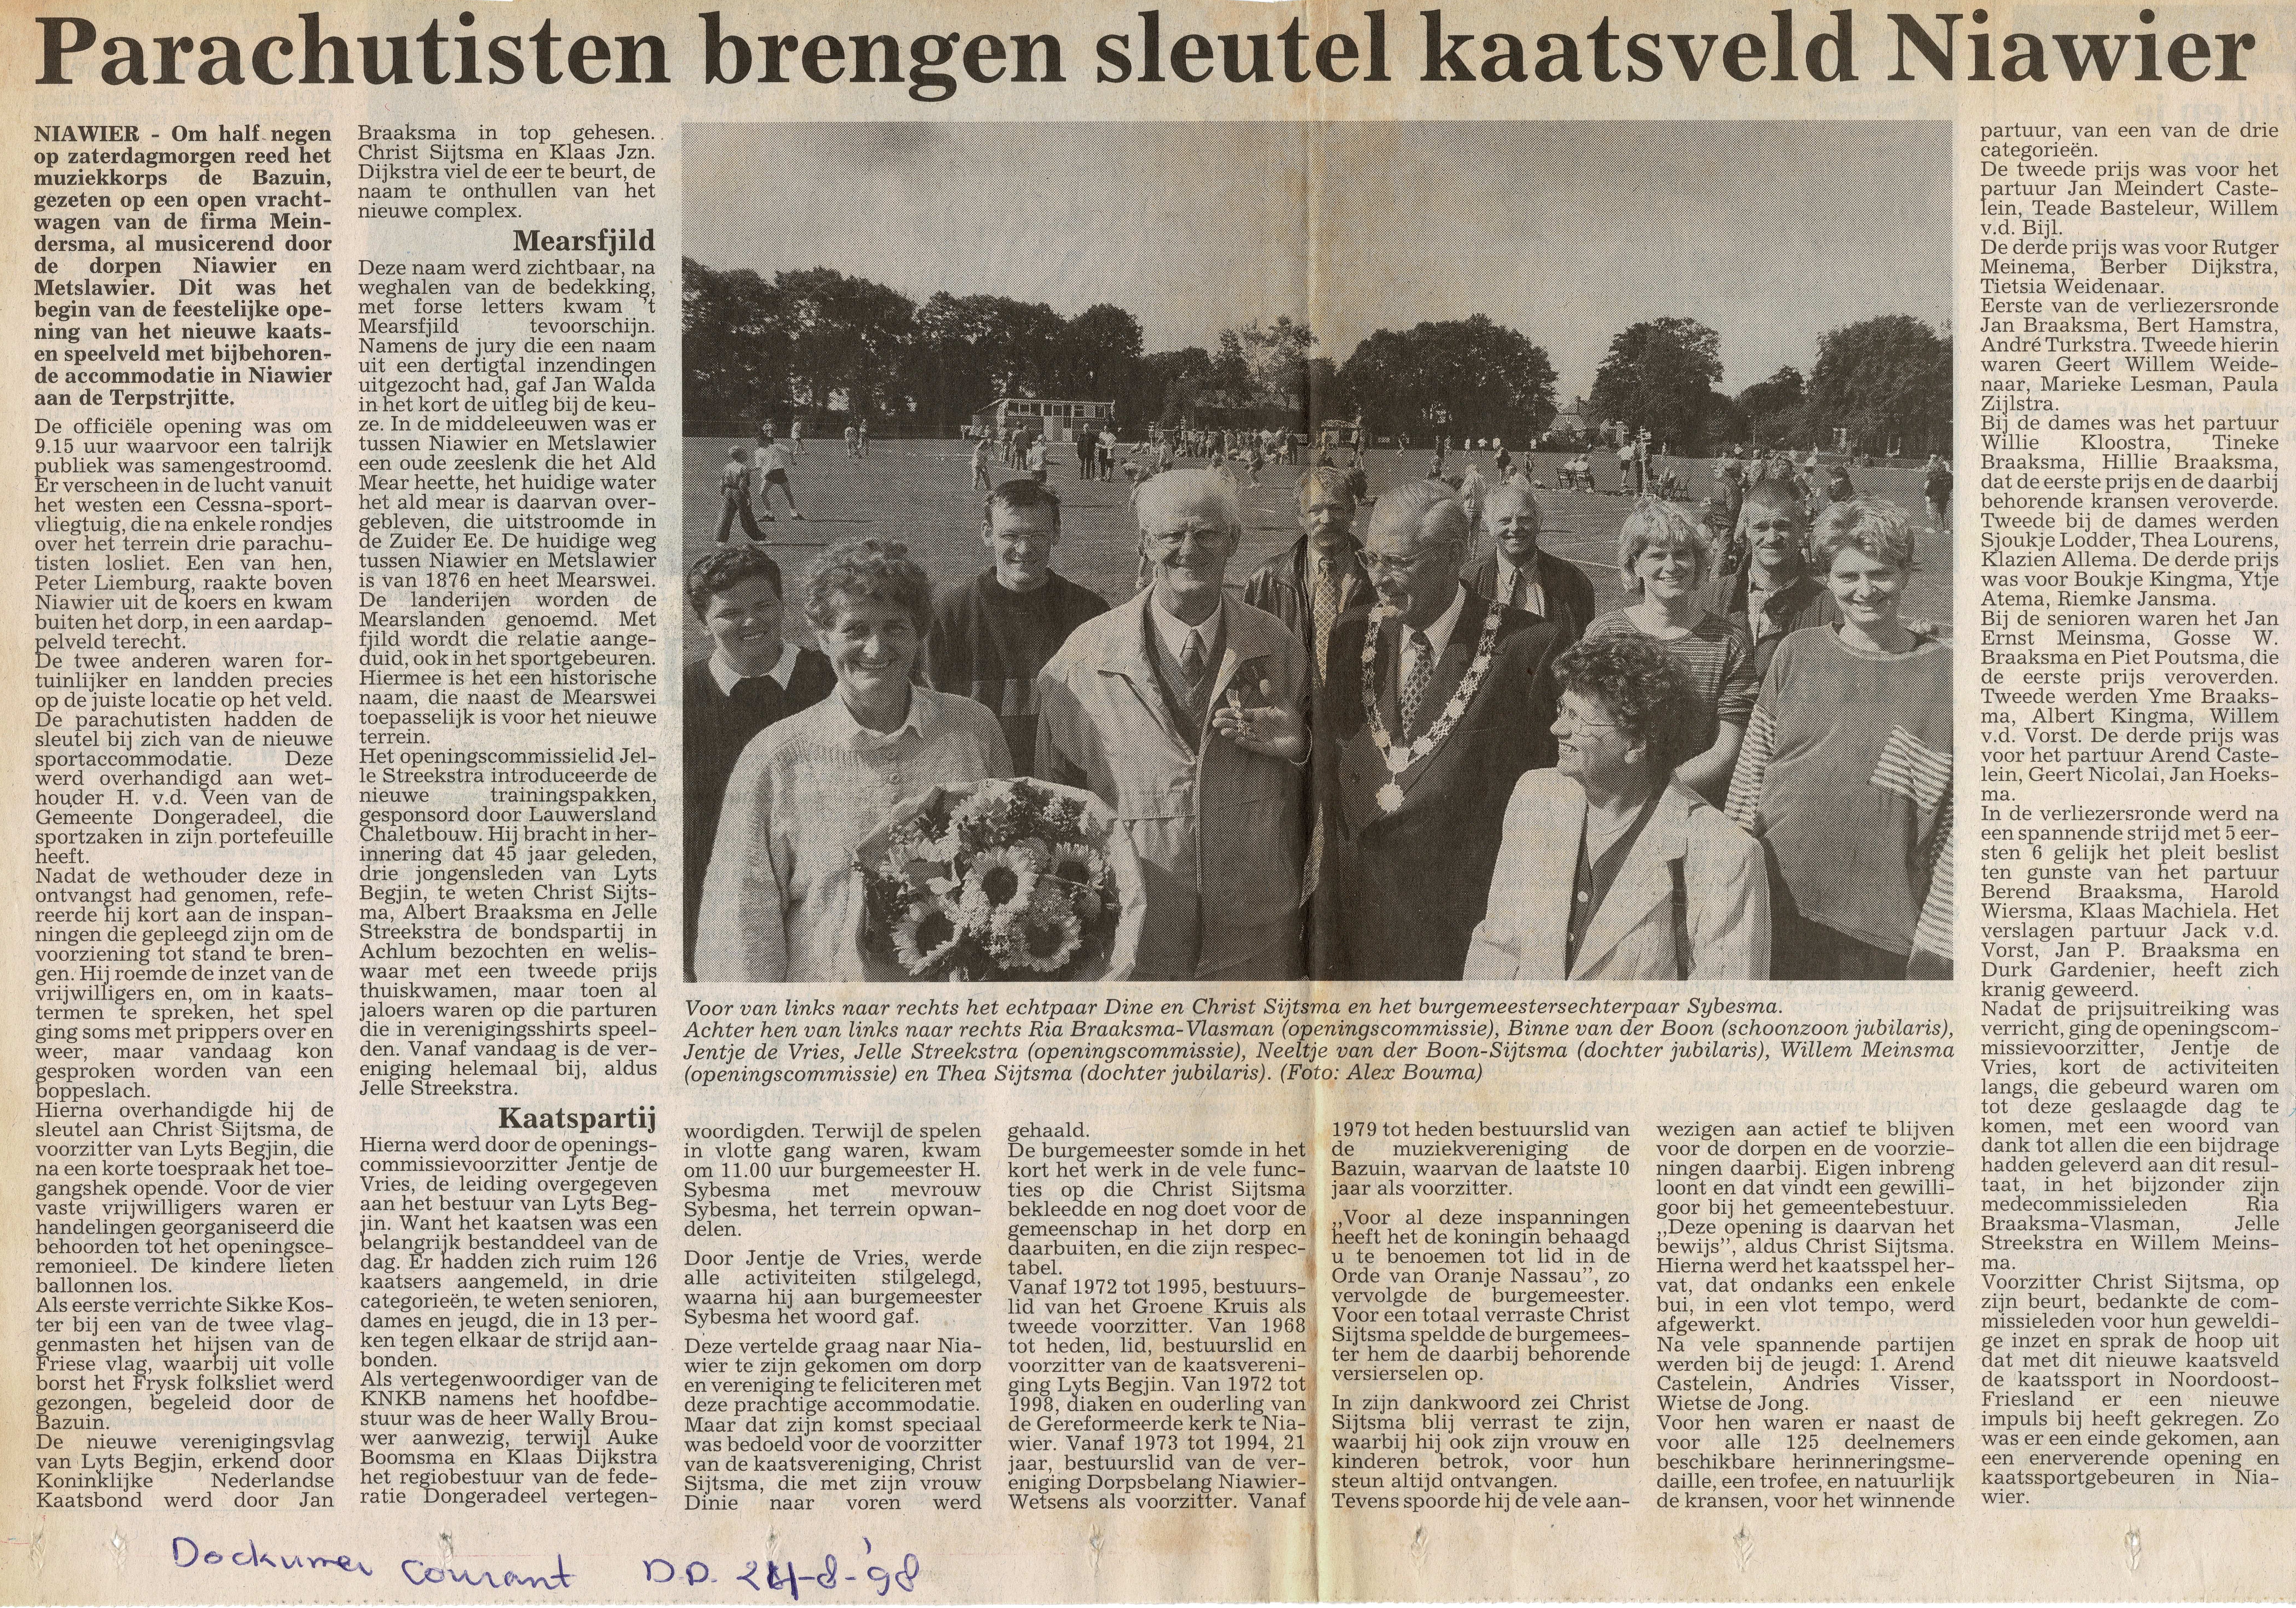 1998-08-24 Dockumer Courant Kaatsveld